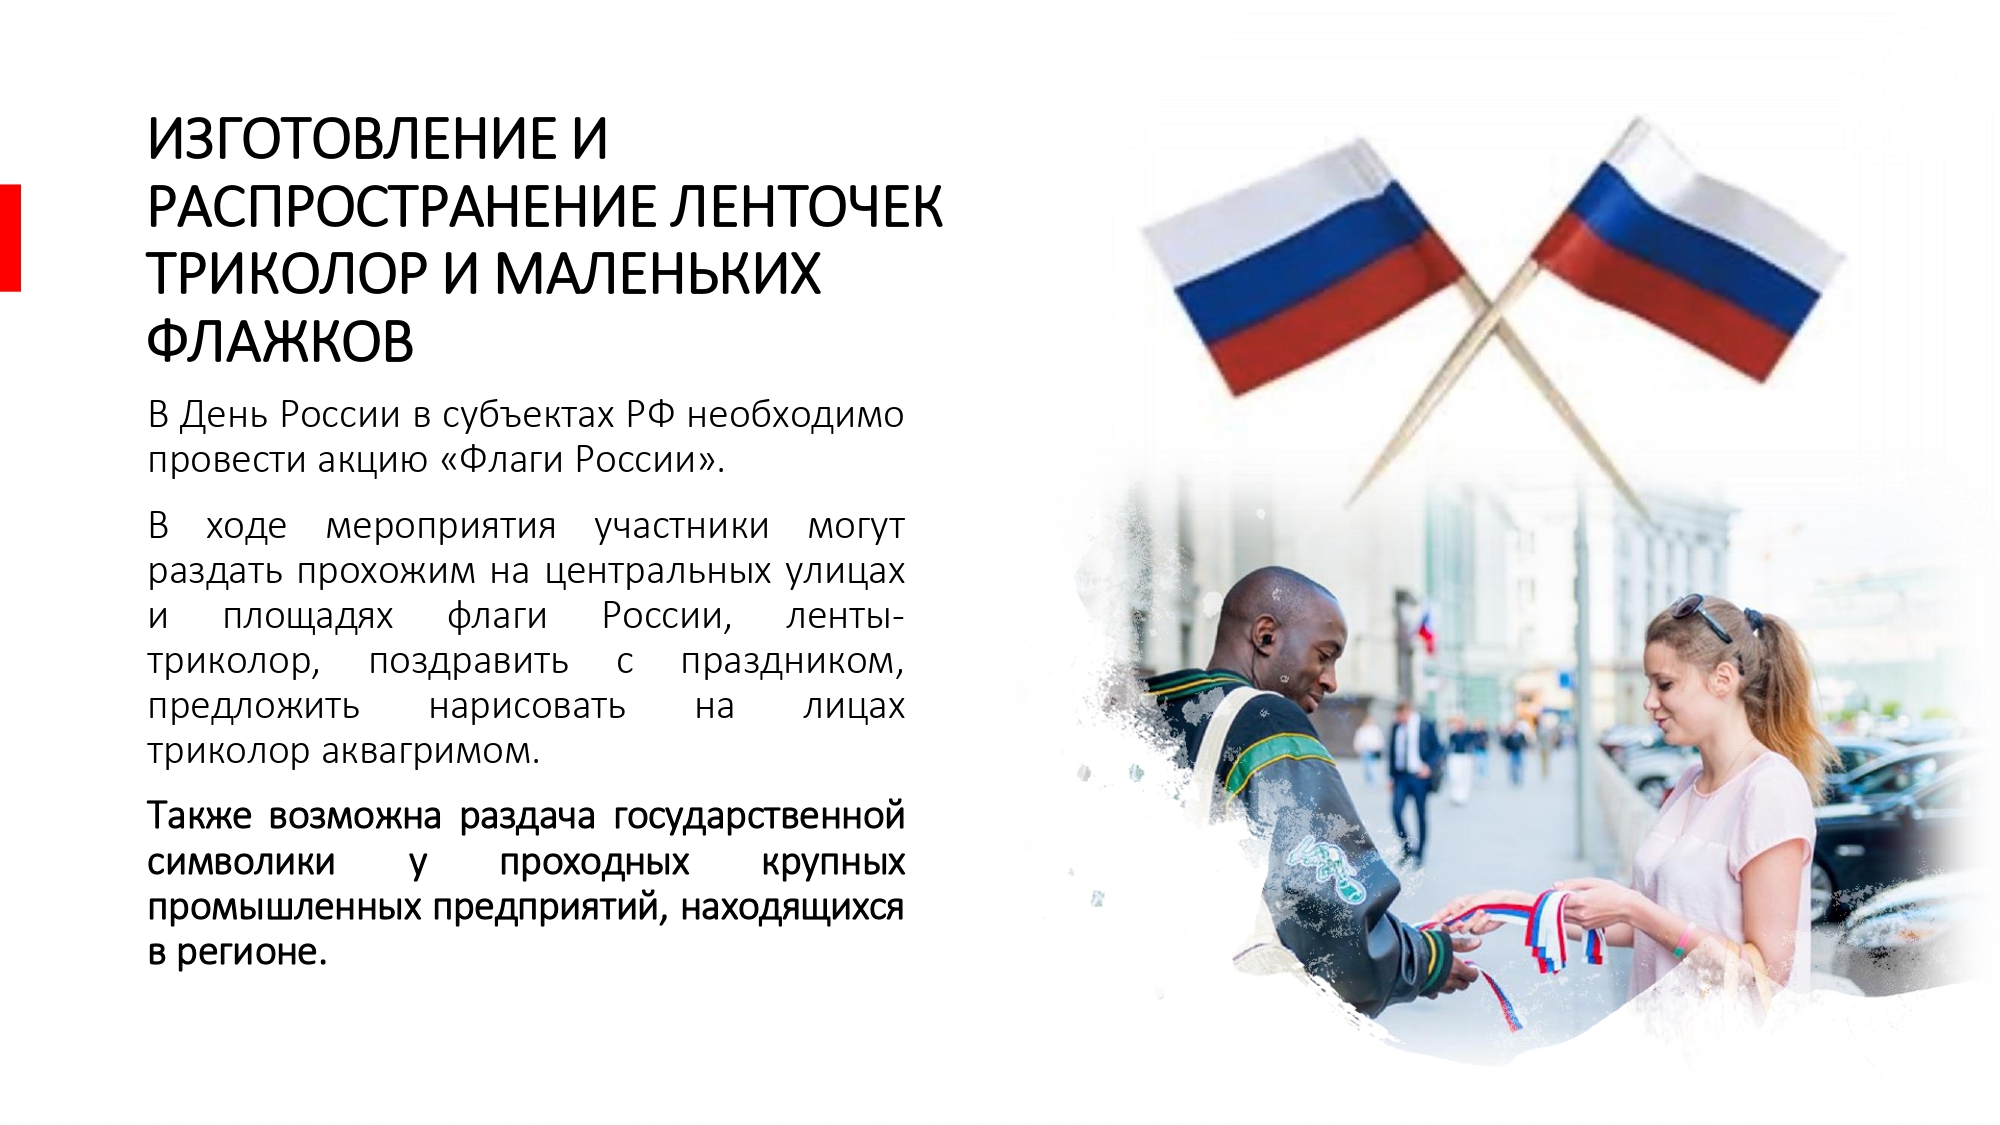 новые проекты для реализациив День России_page-0002